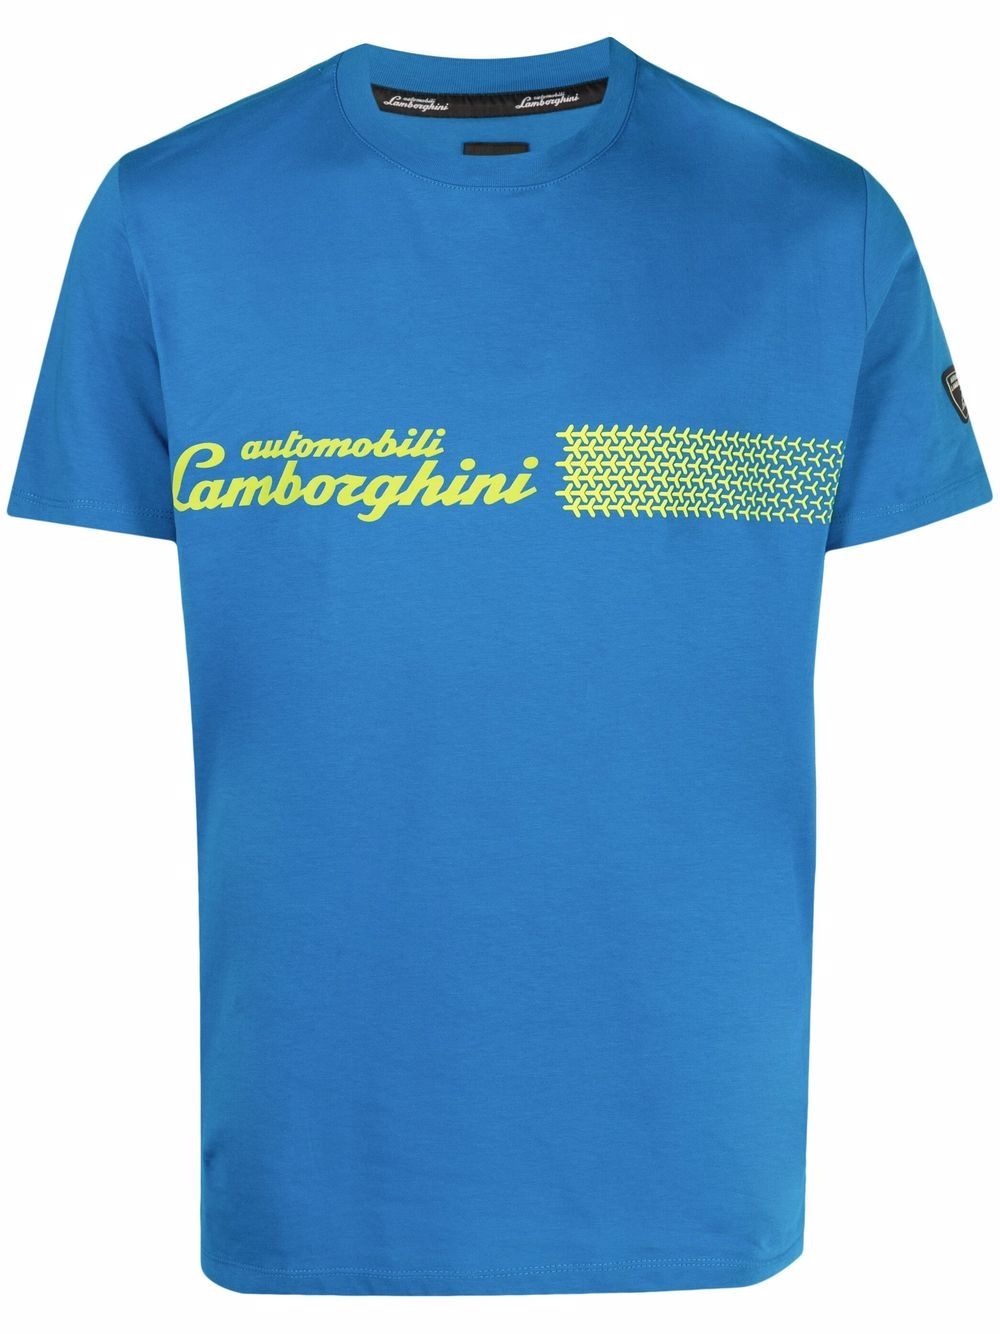 фото Automobili lamborghini футболка с логотипом